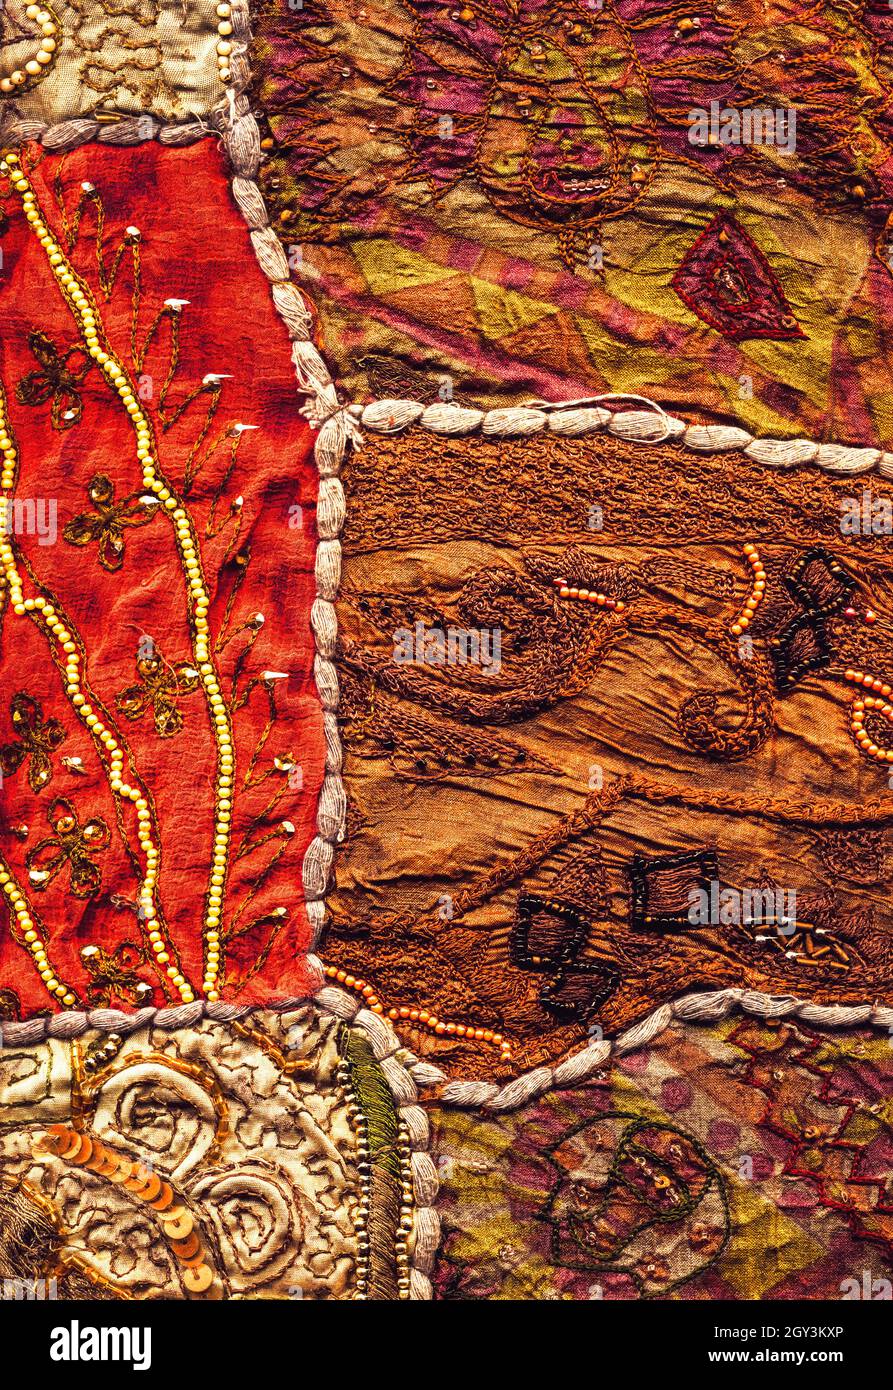 cerca de sari indio muy ornamentado y colorido Foto de stock